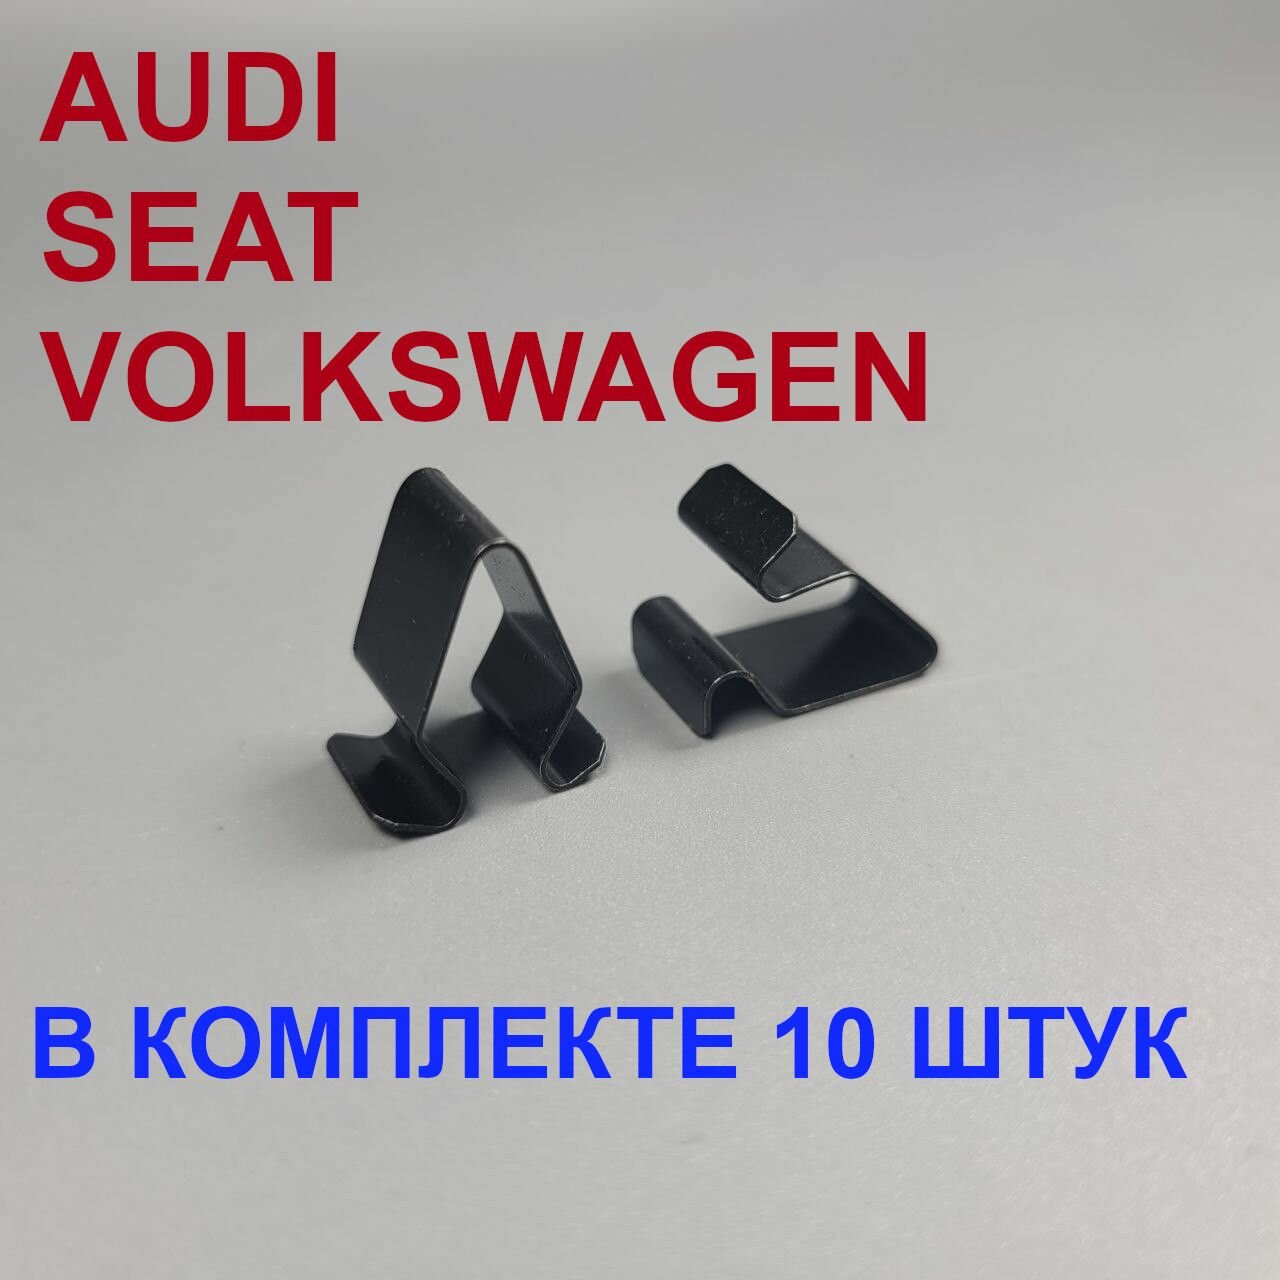 Клипсы (Скобы) для автомобилей Volkswagen Audi Skoda 10шт